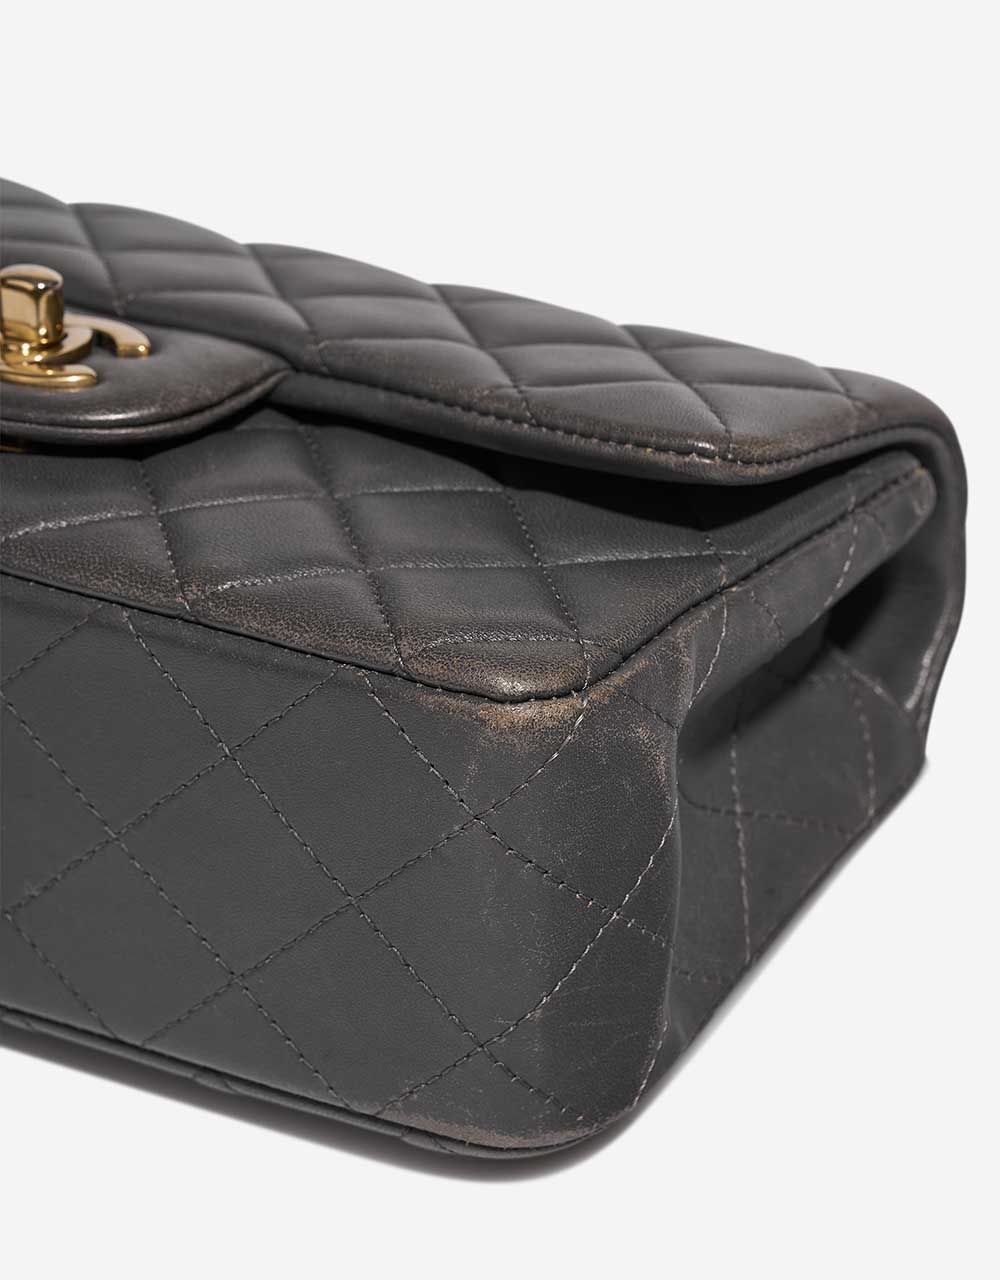 Chanel Timeless MiniRectangular Anthrazit Gebrauchsspuren 3 | Verkaufen Sie Ihre Designer-Tasche auf Saclab.com